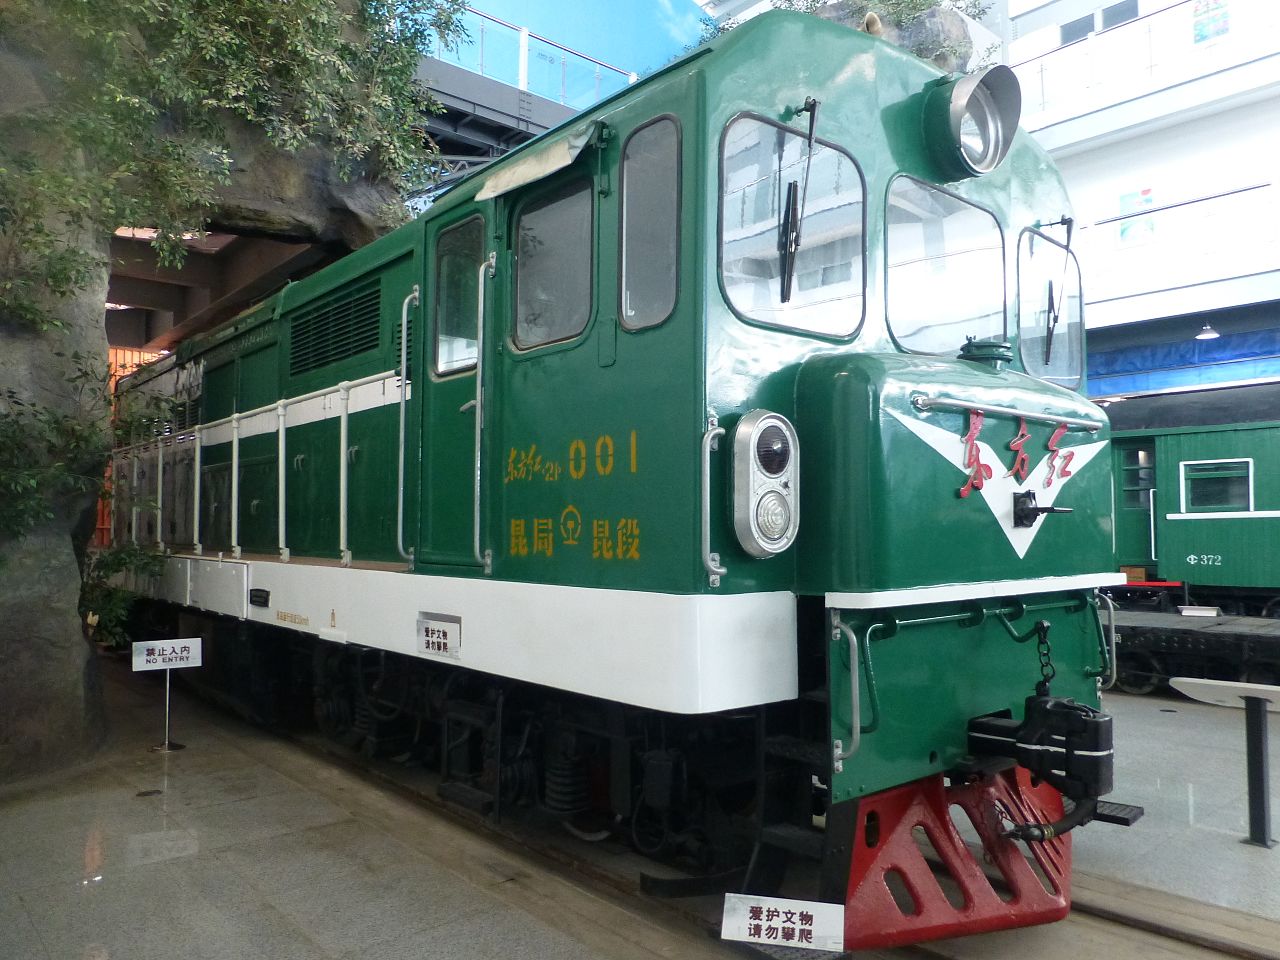 在雲南鐵路博物館展示的東方紅21型內燃機車